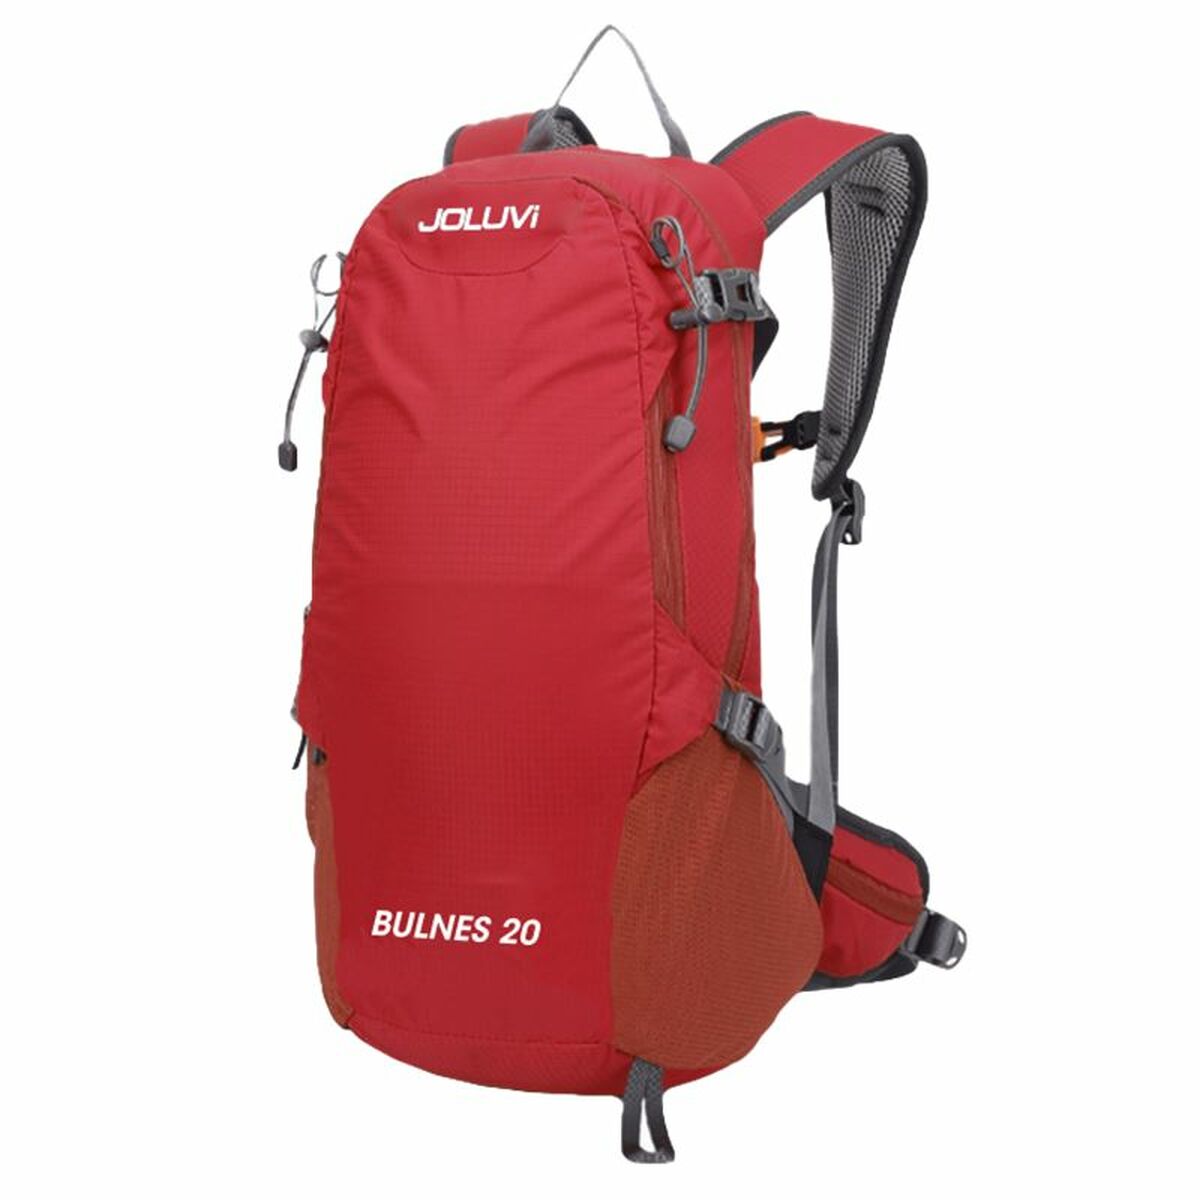 Hiking Backpack Joluvi Bulnes 20 Red